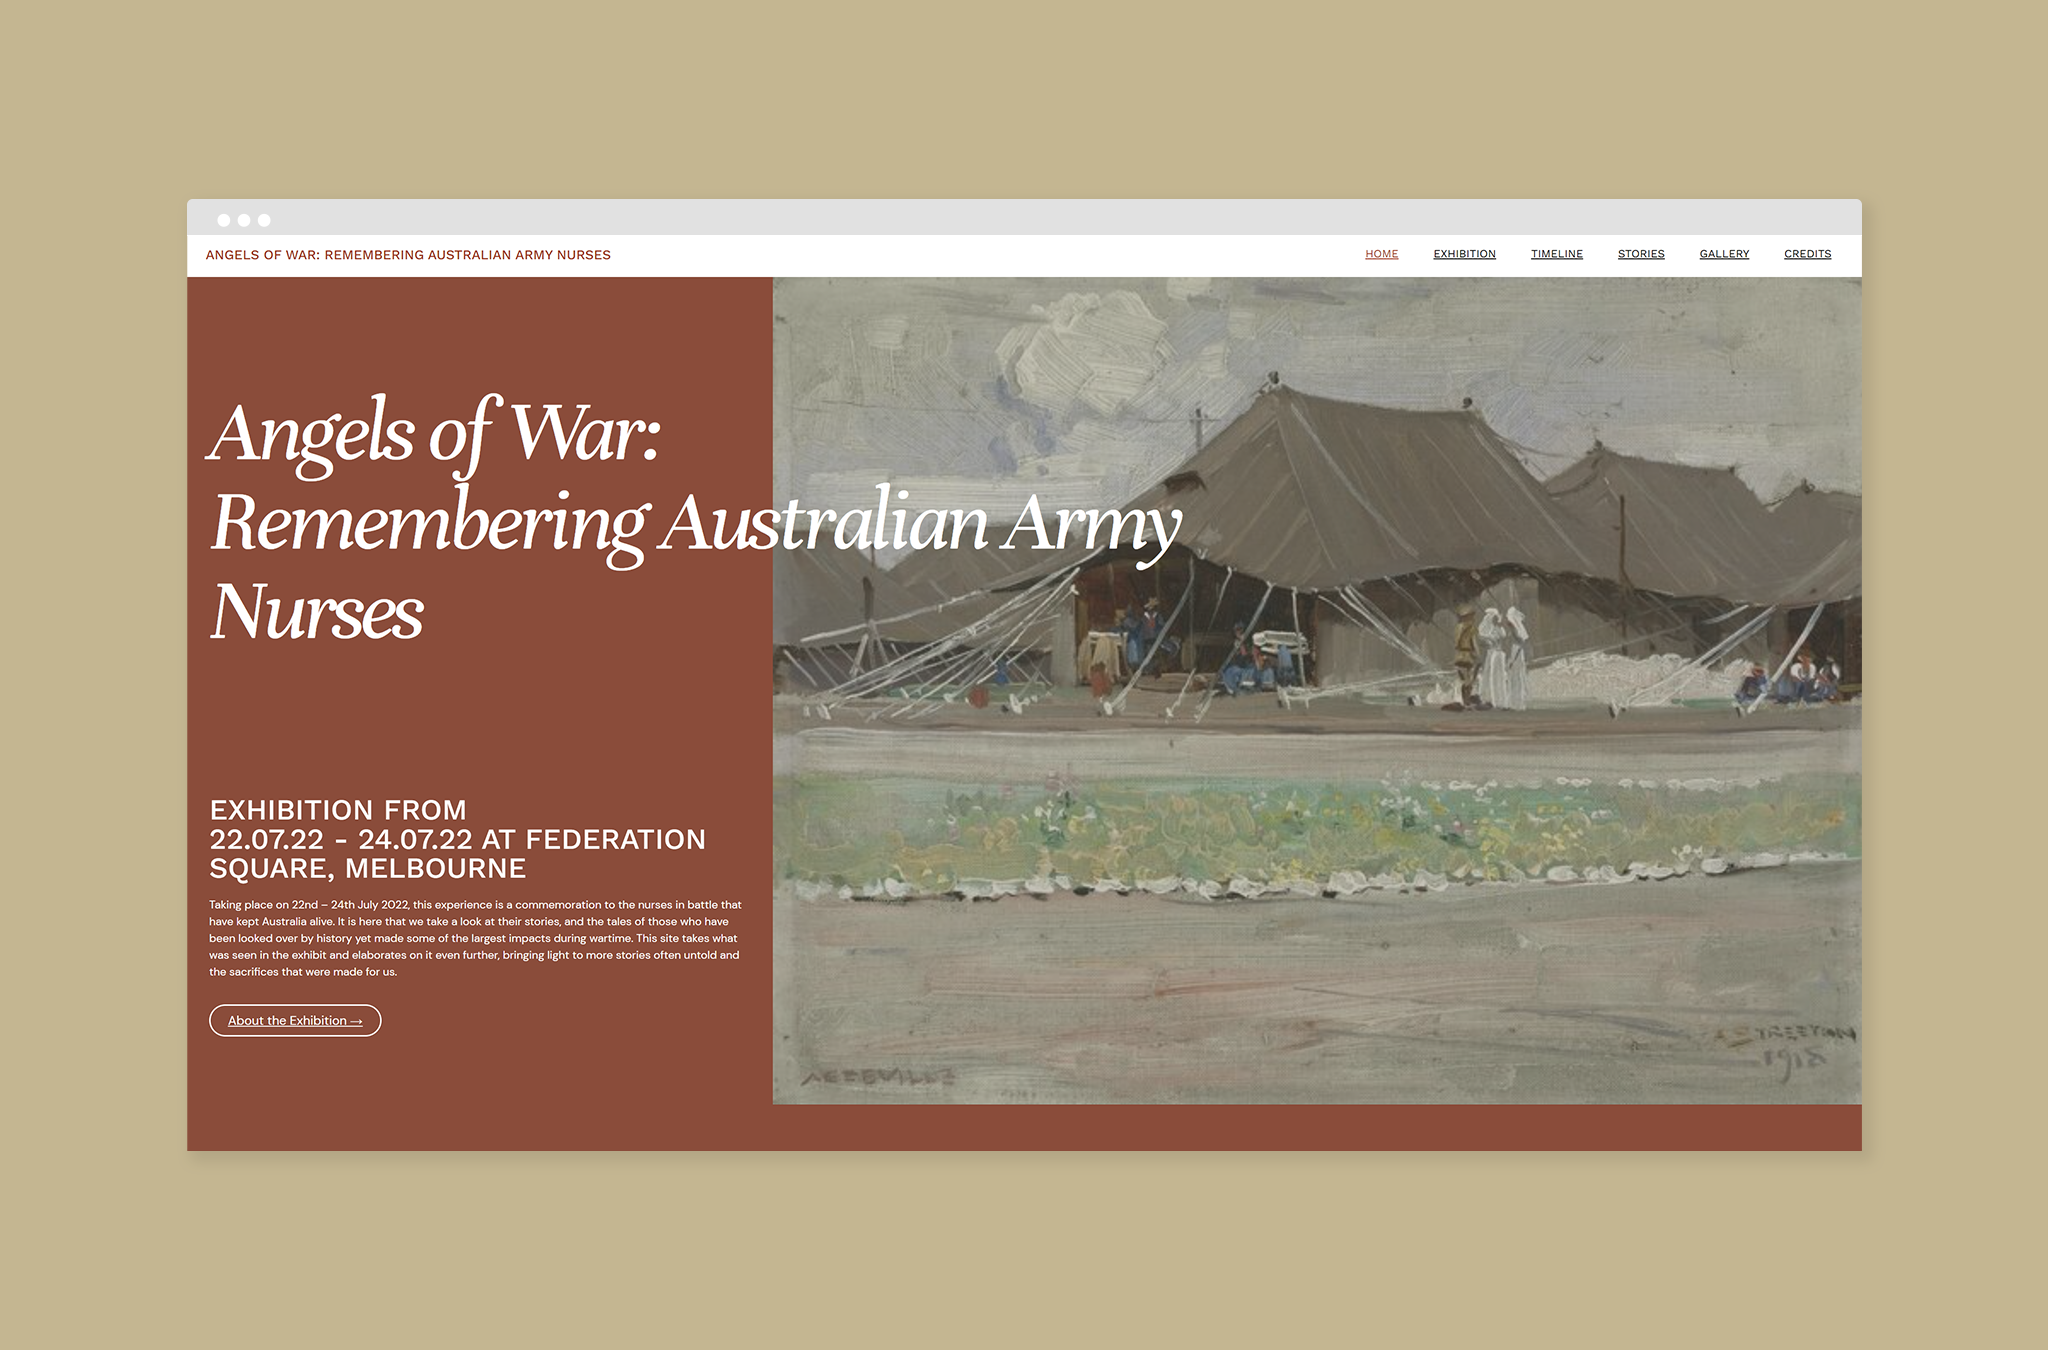 The desktop website home screen promoting the exhibit.